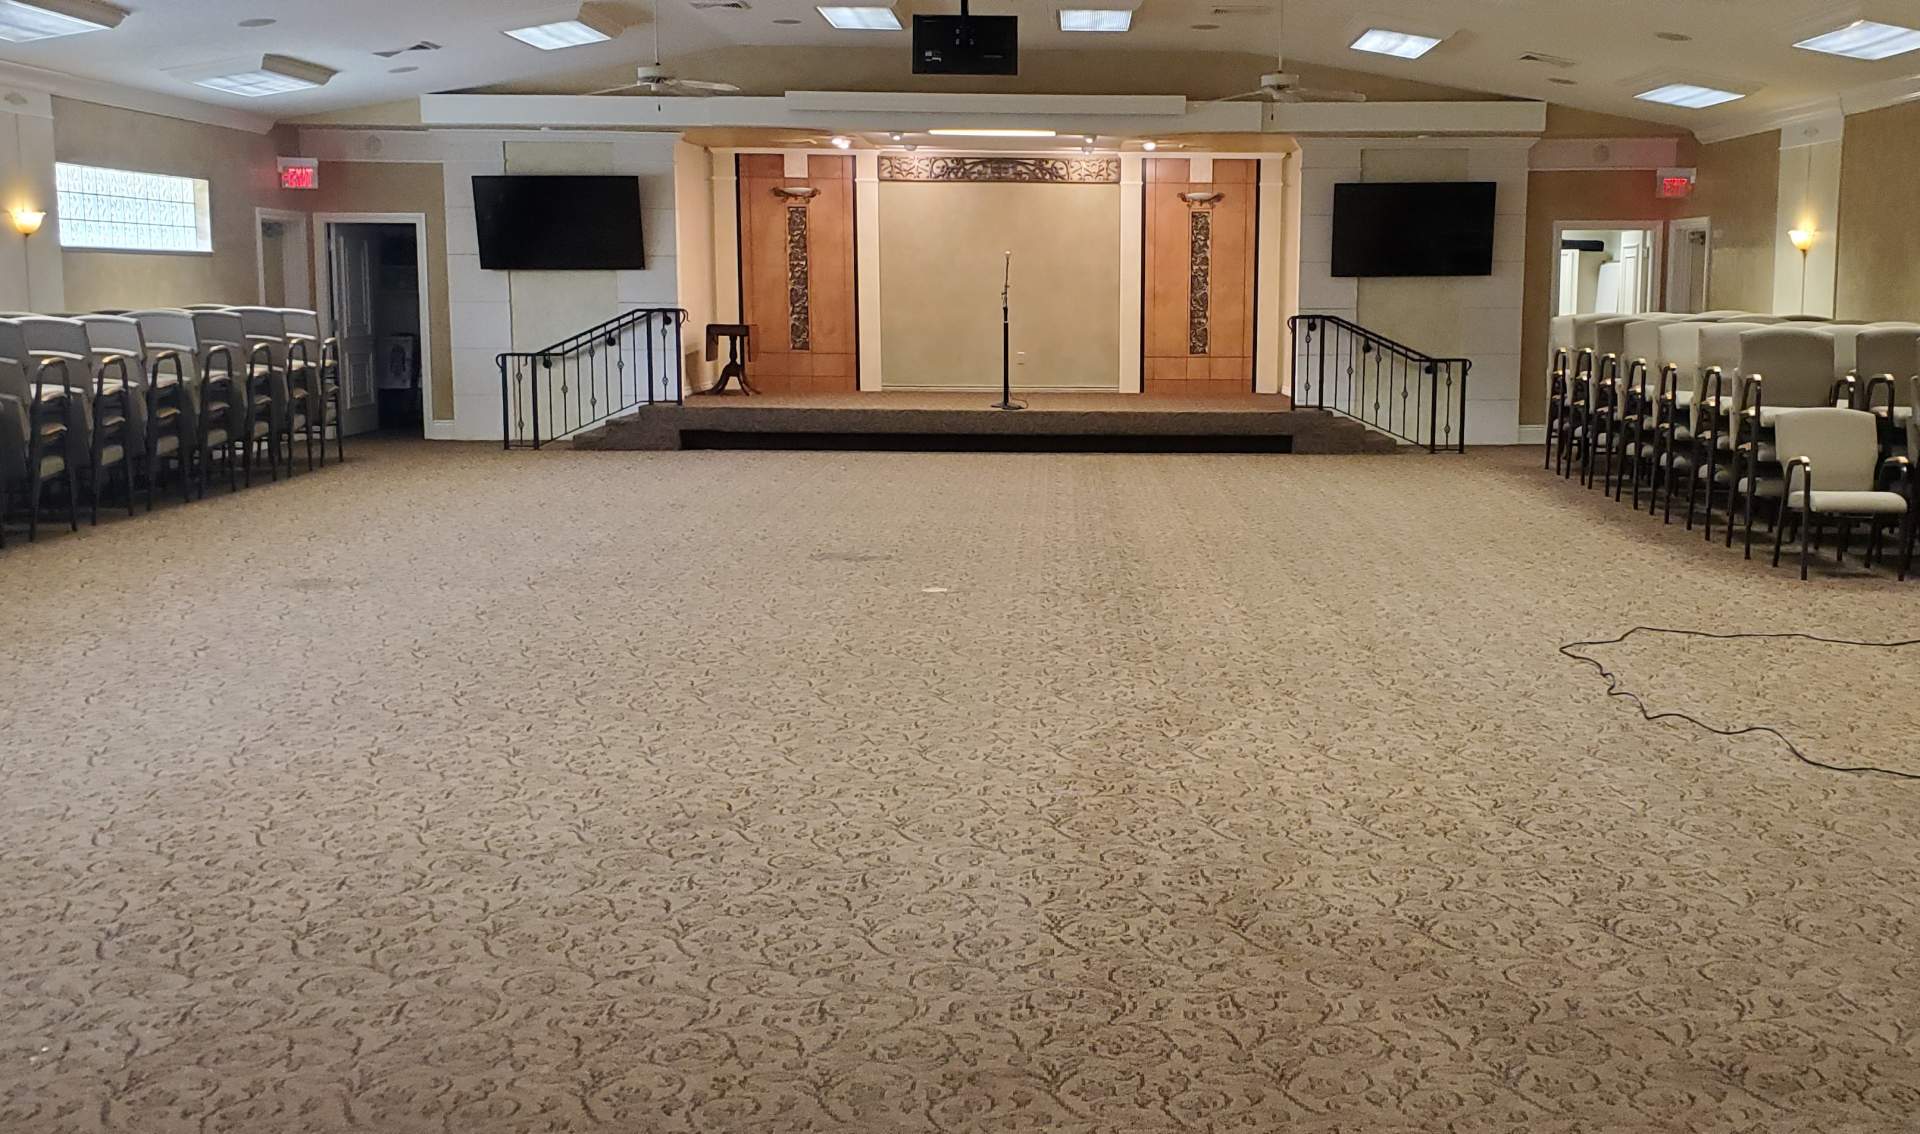 https://www.executivefloorcare.com/images/Auditorium-carpet-cleaning-Vero-Beach.jpg